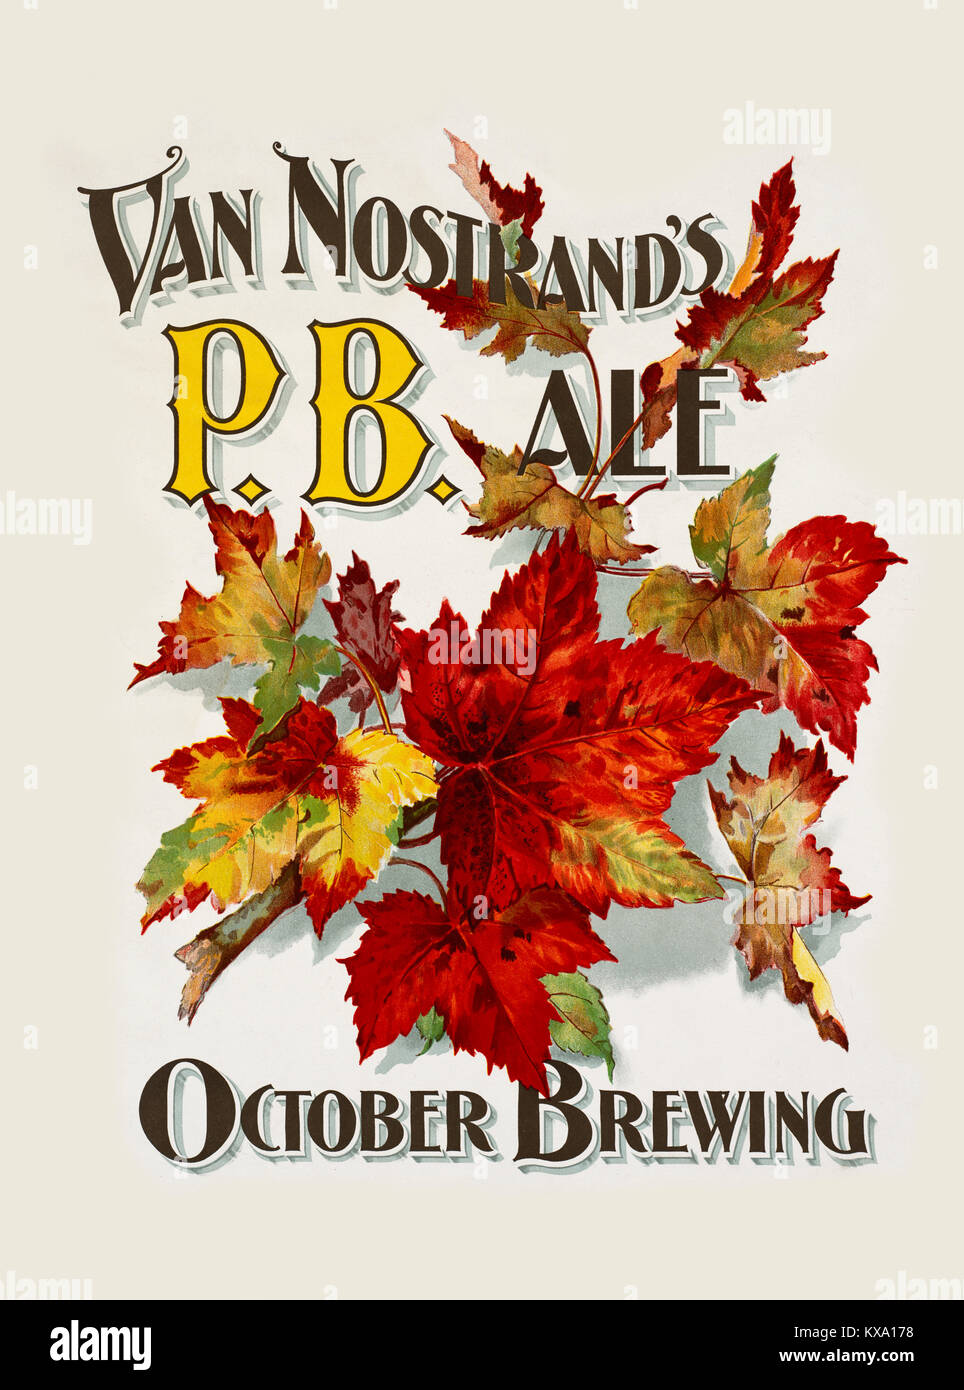 Van Nostrand's P.B. ale. Octobre Brewing Banque D'Images